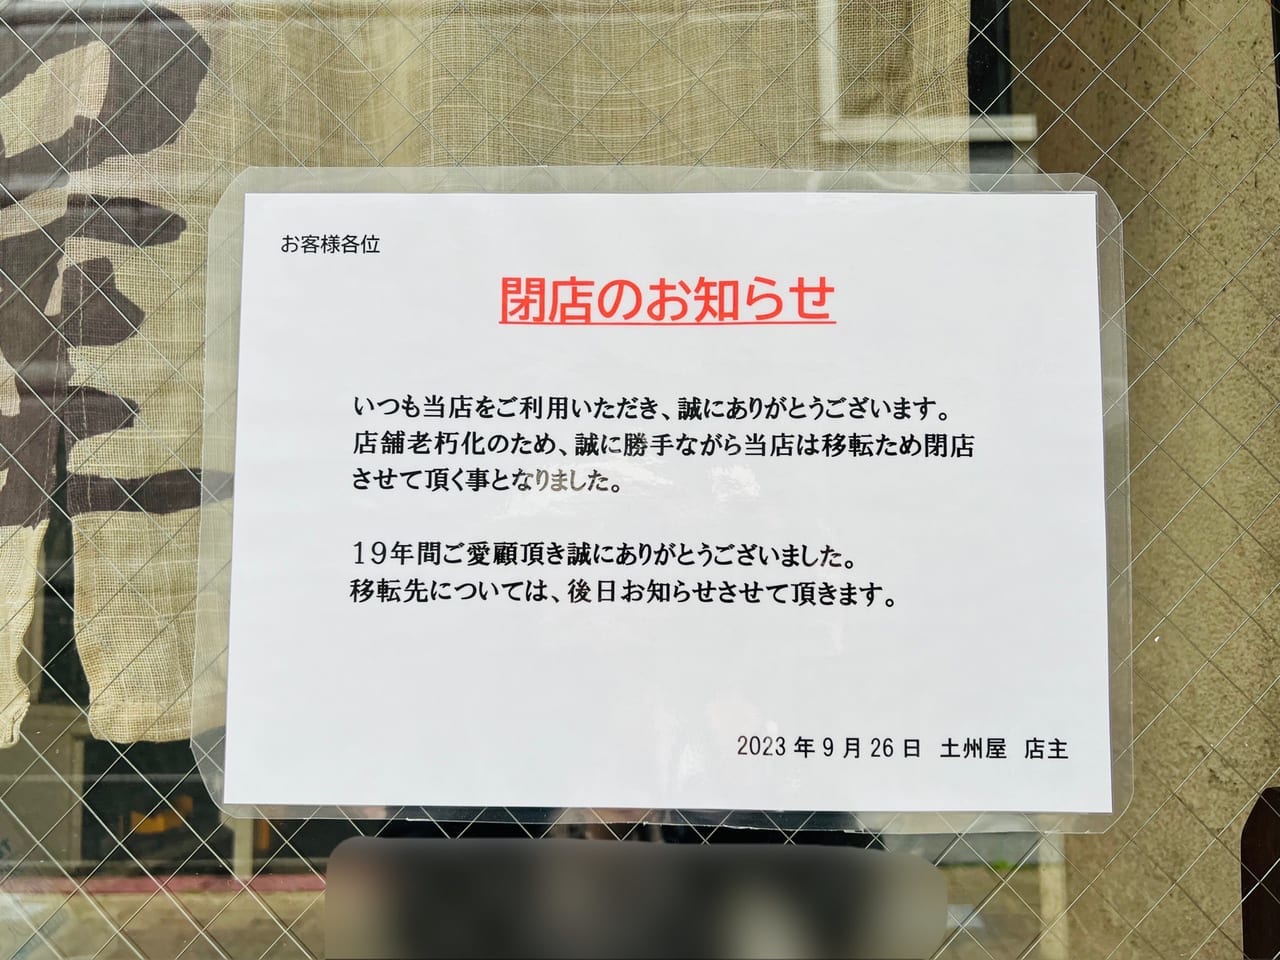 「中華そば 土州屋」の閉店のお知らせ